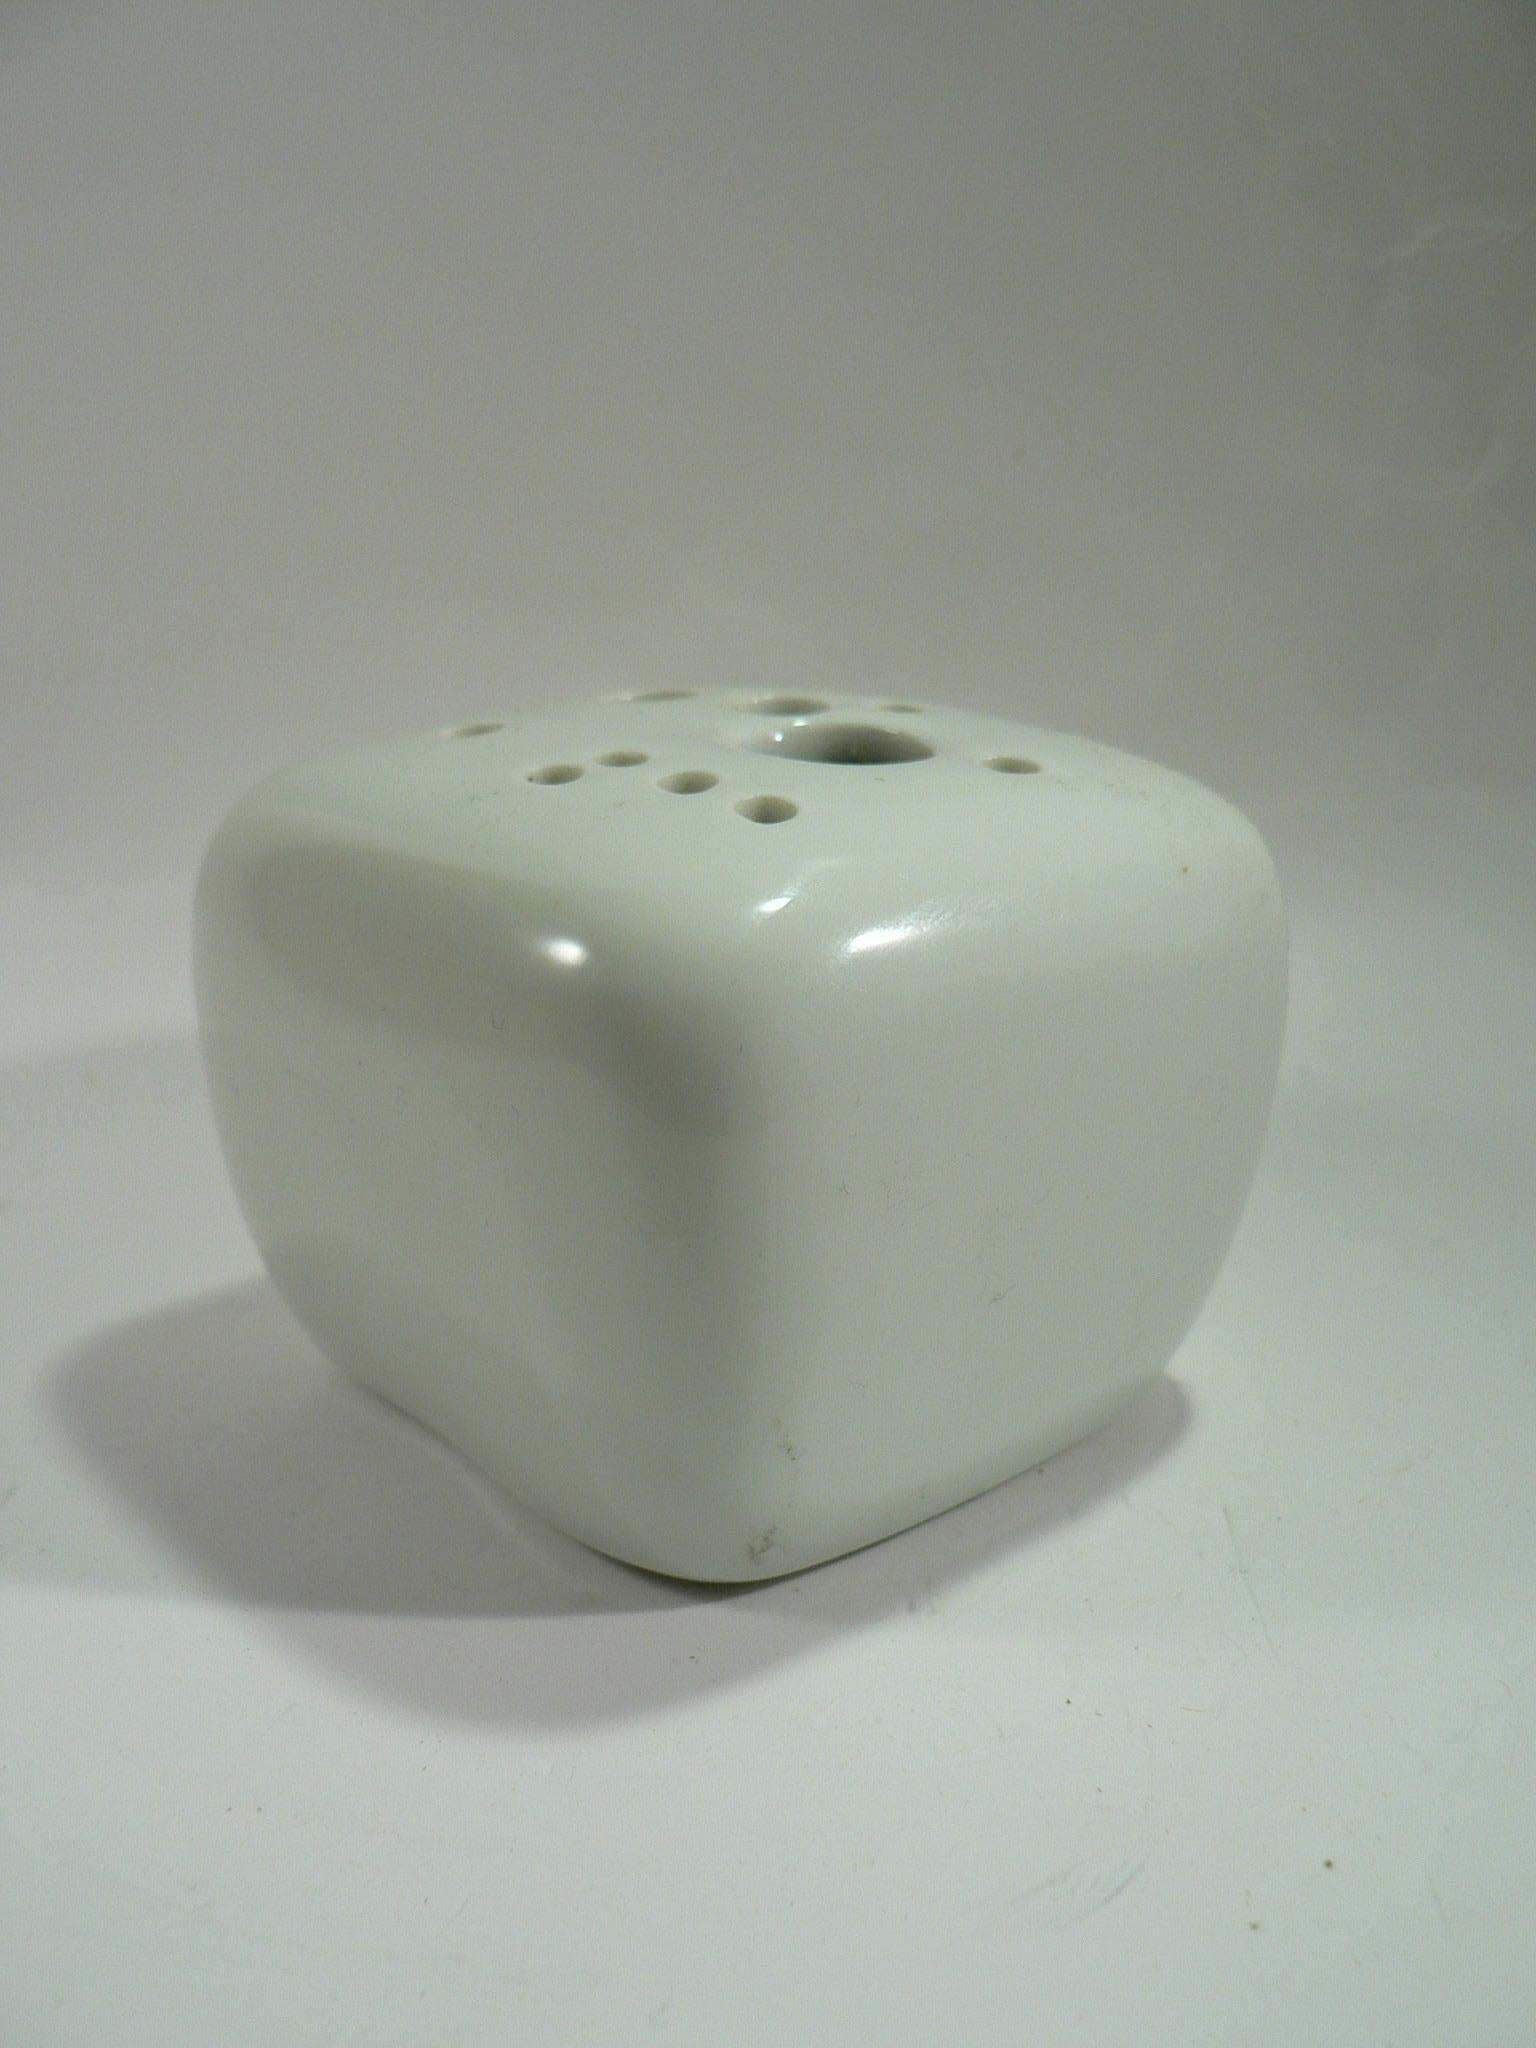 Pierre Lèbe (1929-2008) for Virebent
Rectangular-shaped white glazed porcelain flower holder.
Marked. Circa 1970.
Height: 5 cm - 
Diameter: 9 cm.